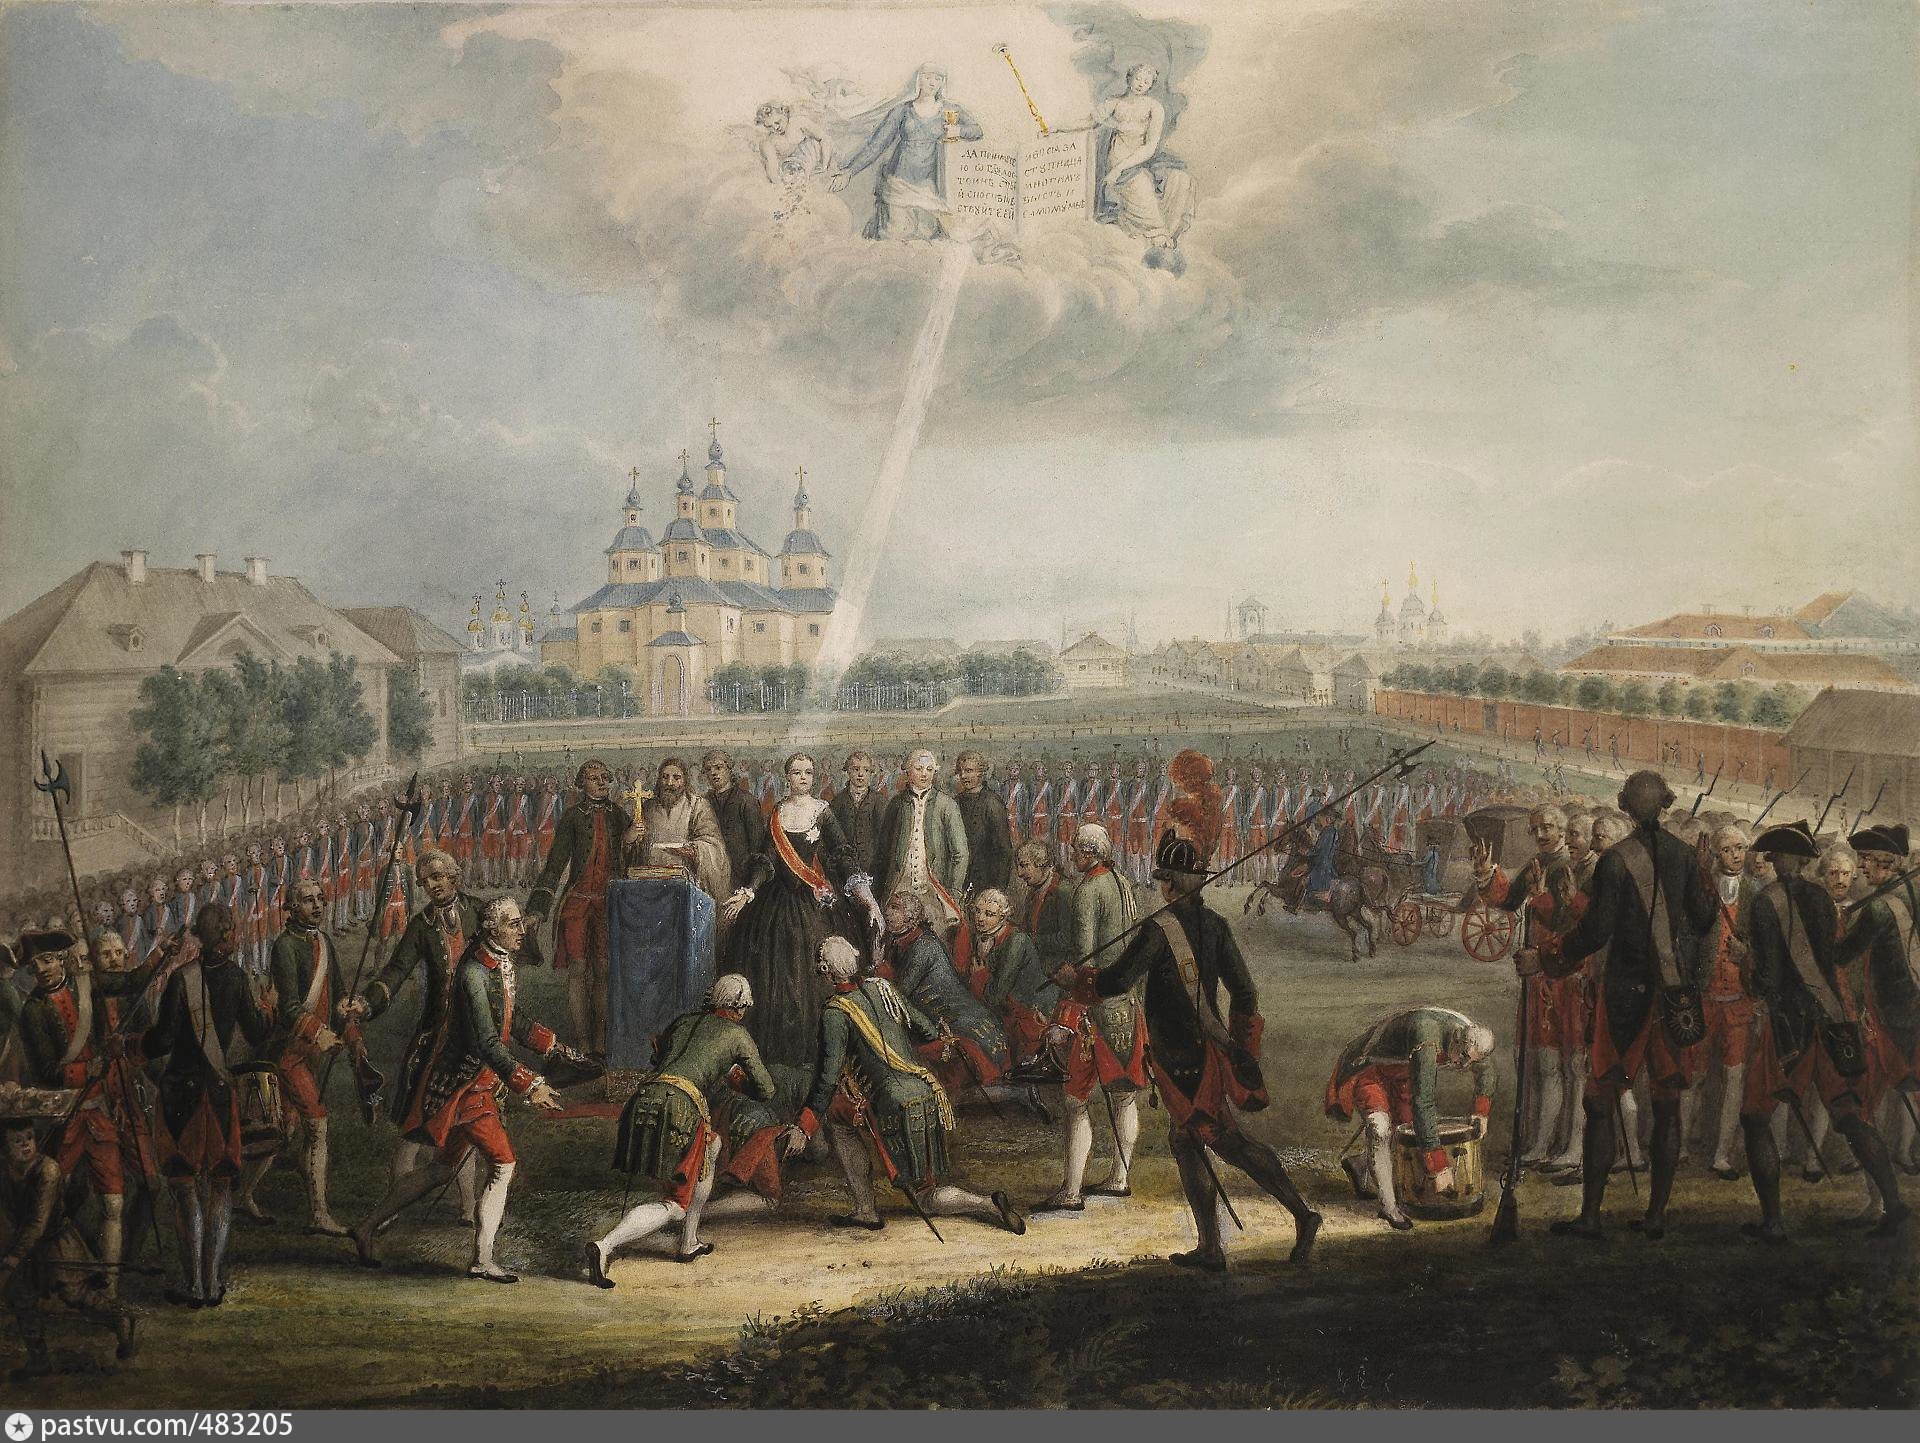 События 28 июня. Дворцовый переворот 1762 Измайловский полк. Переворот 28 июня 1762 года Екатерины 2. Присяга Измайловского полка Екатерине II. Дворцовый переворот 28 июня 1762 года.